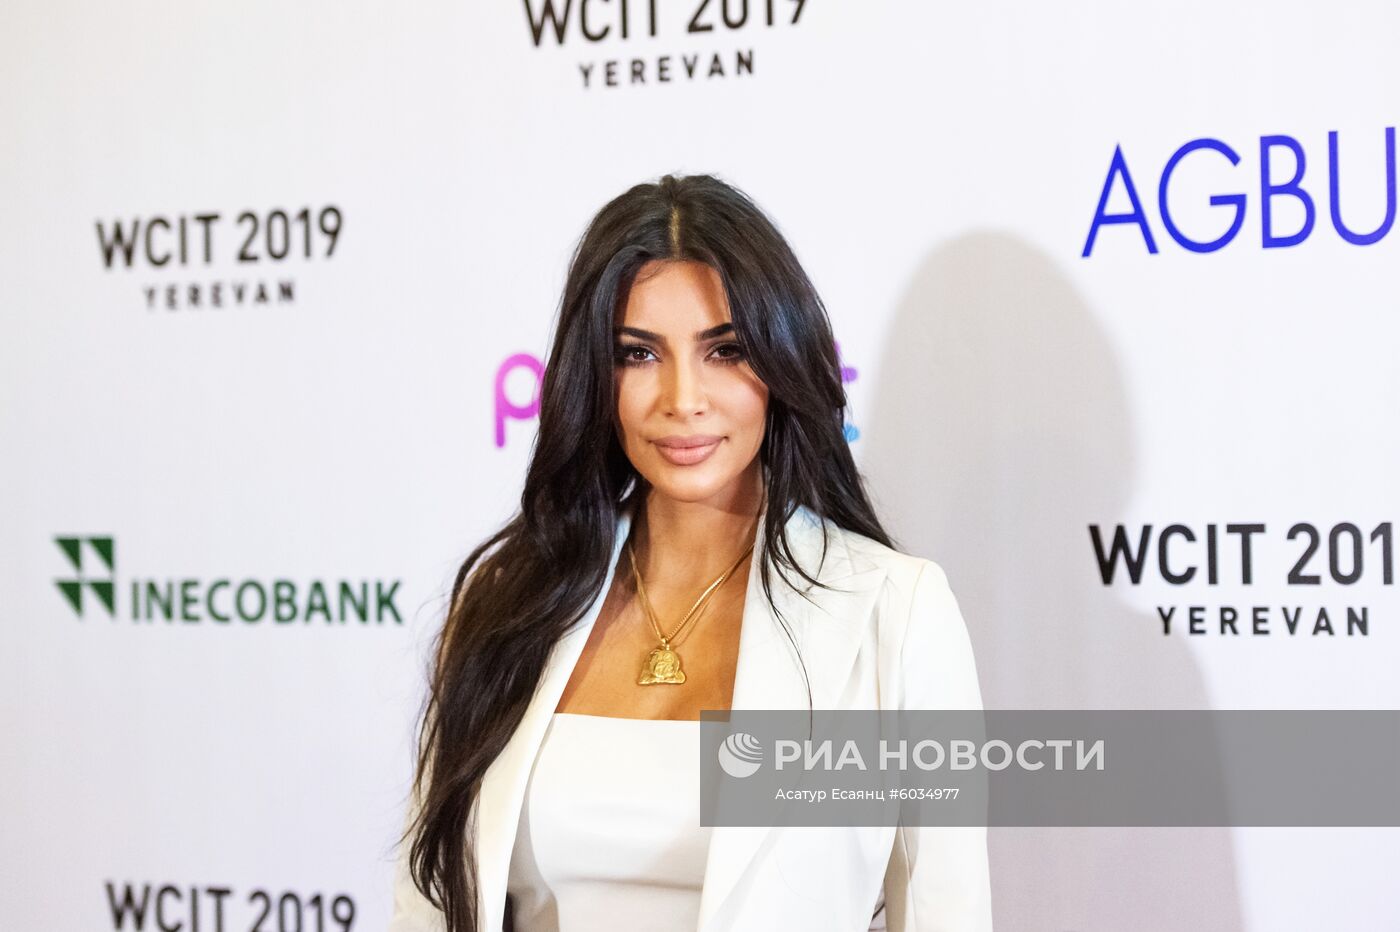 Ким Кардашьян посетила форум WCIT 2019 в Ереване